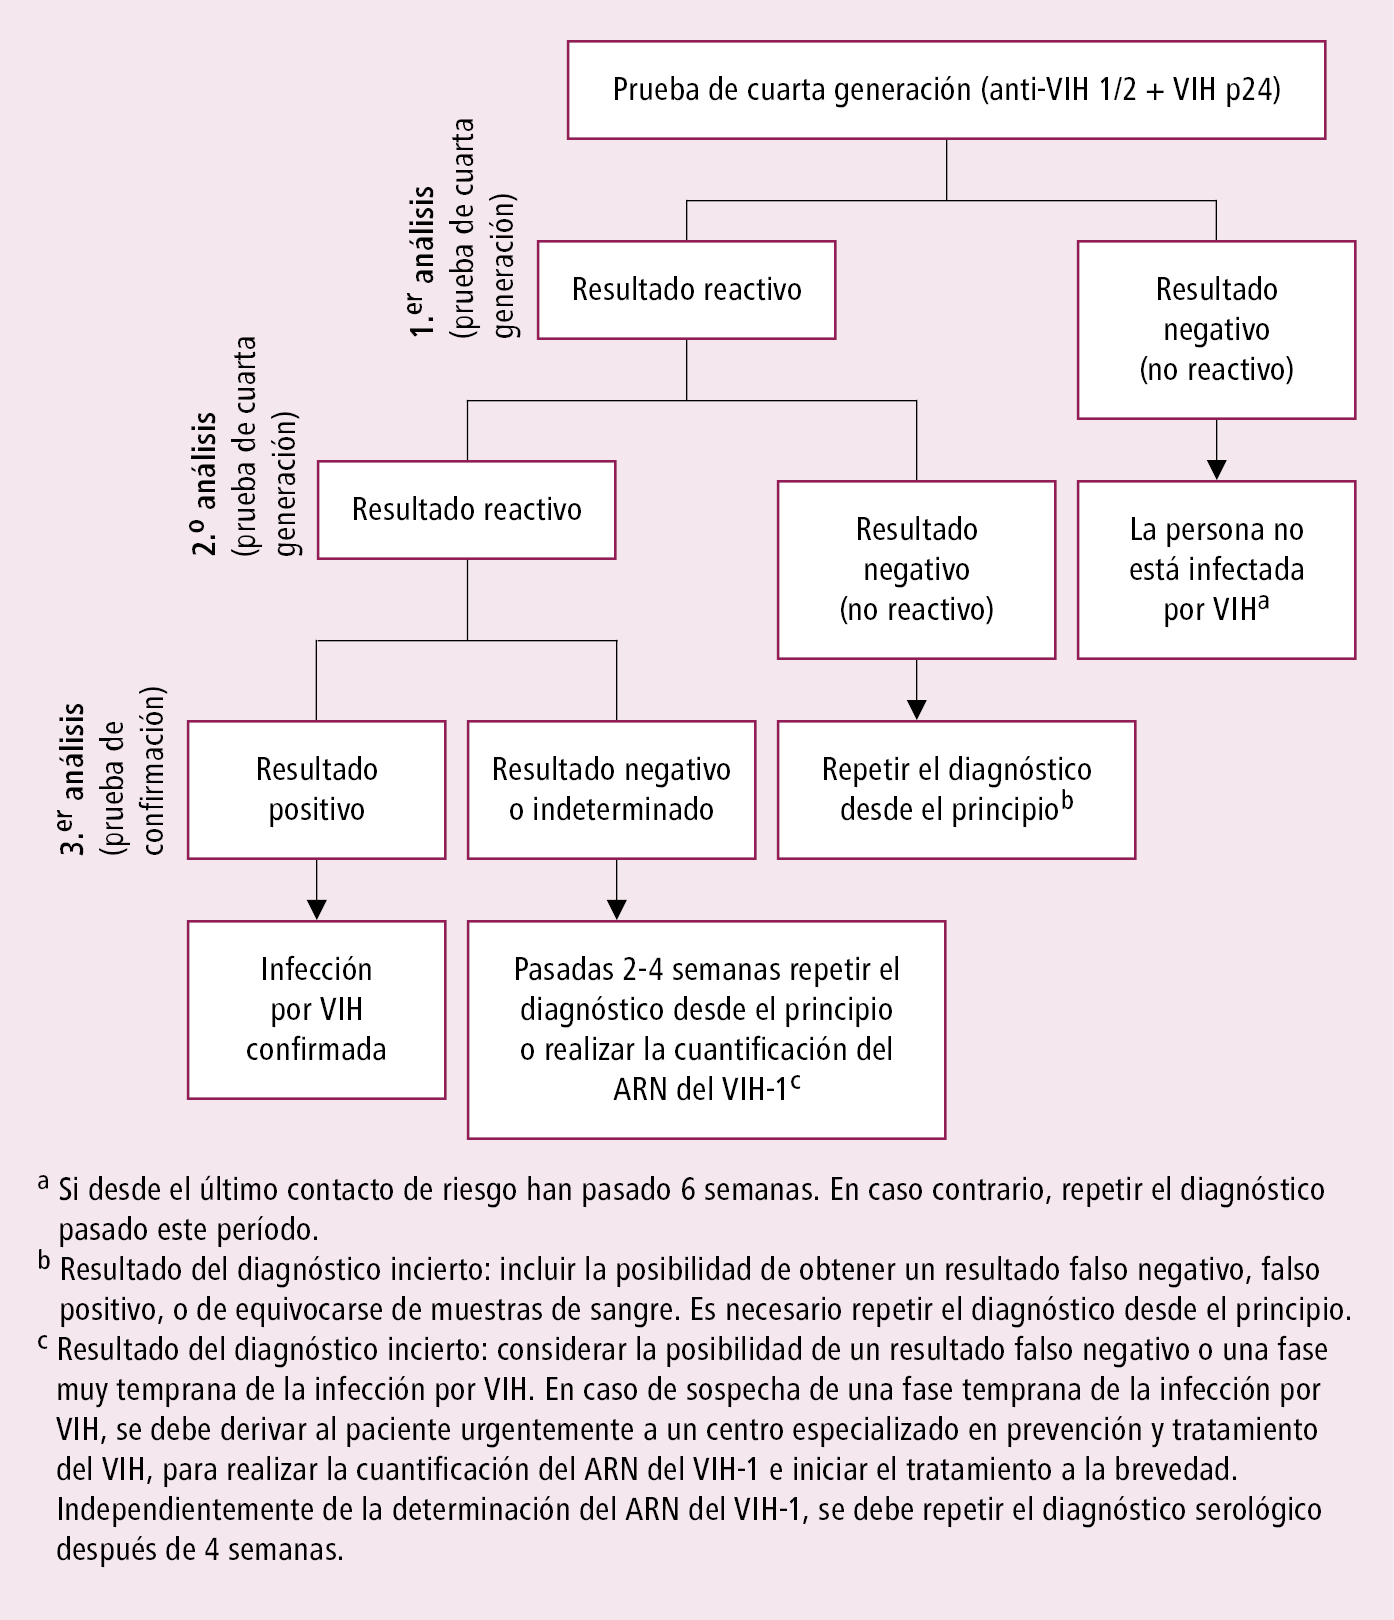    Fig. 19.7-1.  Algoritmo de diagnóstico serológico de la infección por VIH 